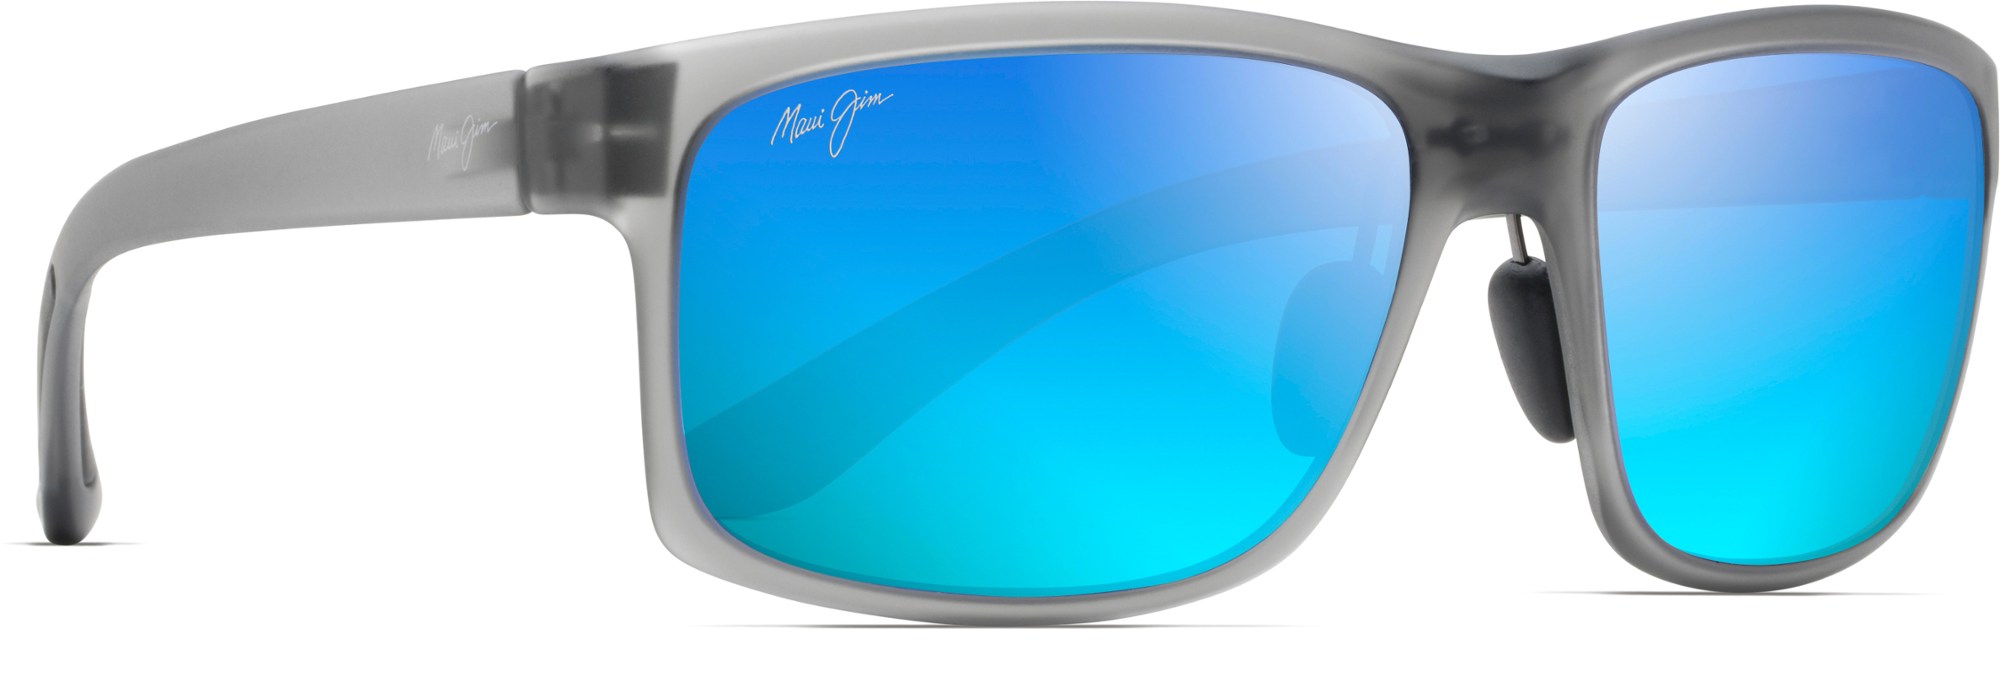 цена Поляризованные солнцезащитные очки Pokowai Arch Maui Jim, серый